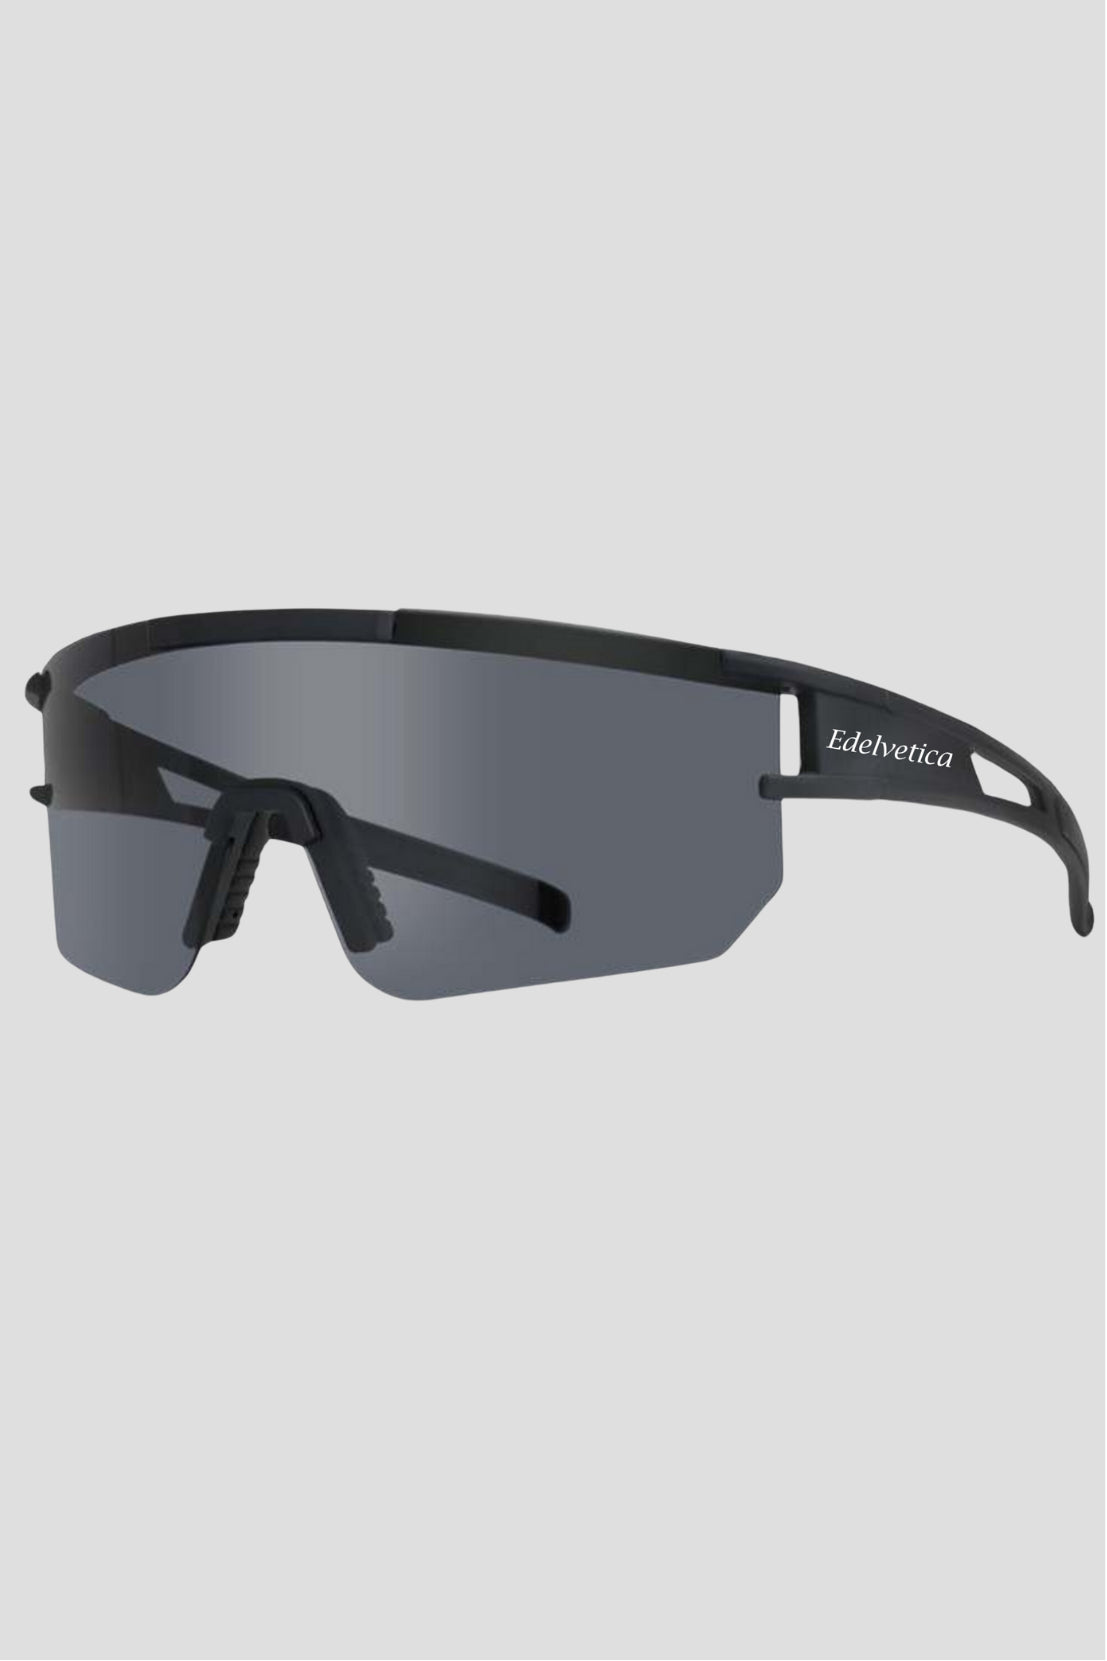 Unisex Sonnenbrille 'Round Race' von Edelvetica, ein elegantes und zugleich sportliches Accessoire. Diese Sonnenbrille zeichnet sich durch ihre runden Gläser und das schlanke, moderne Design aus, das einen Hauch von Retro-Flair mit zeitgemäßer Eleganz verbindet. Sie bietet universellen Stil und Schutz, ideal für modebewusste Männer und Frauen, die einen dynamischen Lebensstil pflegen.